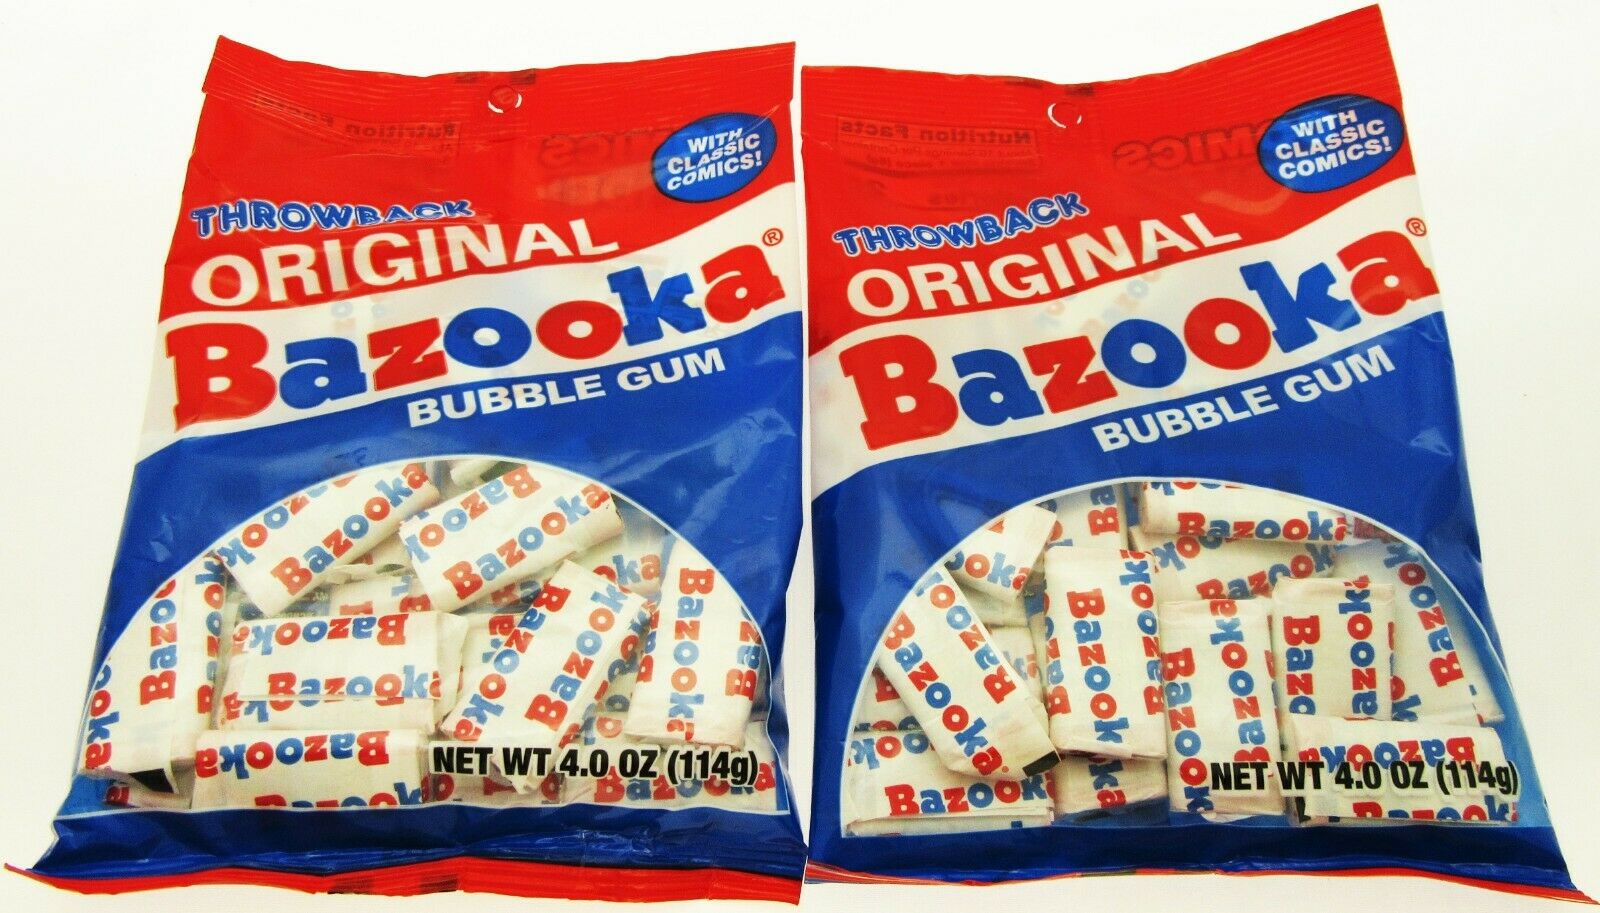 2. Bazooka Joe - Wikipedia - wide 5